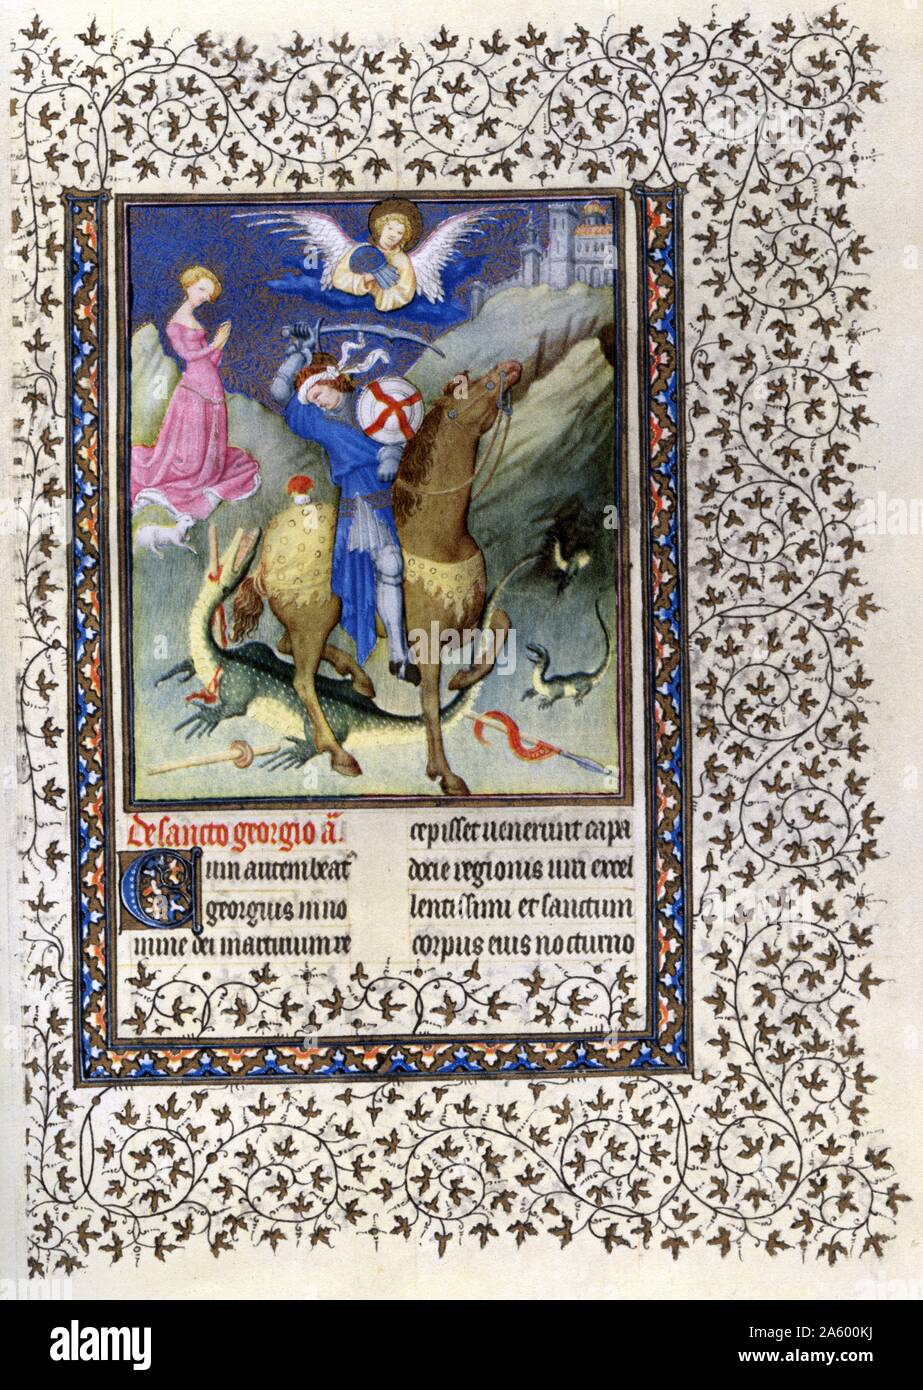 Beleuchtung mit Saint George vom Belles Heures von Jean de France, Duc de Berry (schöne Stunden) eine frühe 15. Jahrhundert beleuchtet Manuskript-Buch von Stunden. Vom 15. Jahrhundert Stockfoto